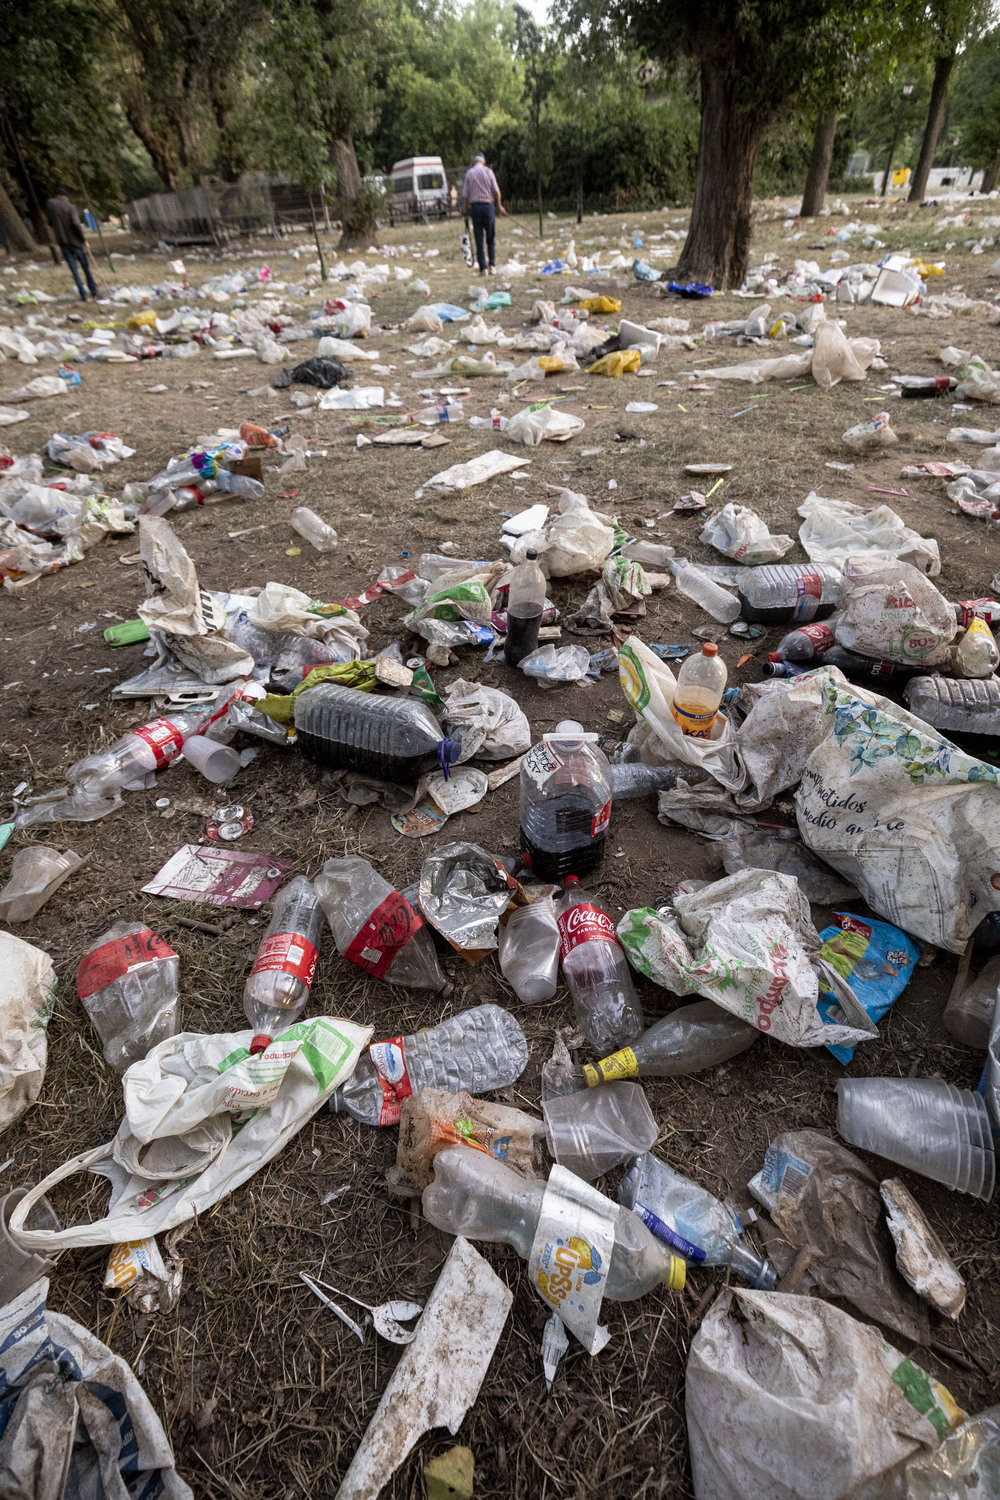 Los servicios de limpieza se afanan en recoger la ingente cantidad de residuos con la que ha amanecido el parque de El Parral. 